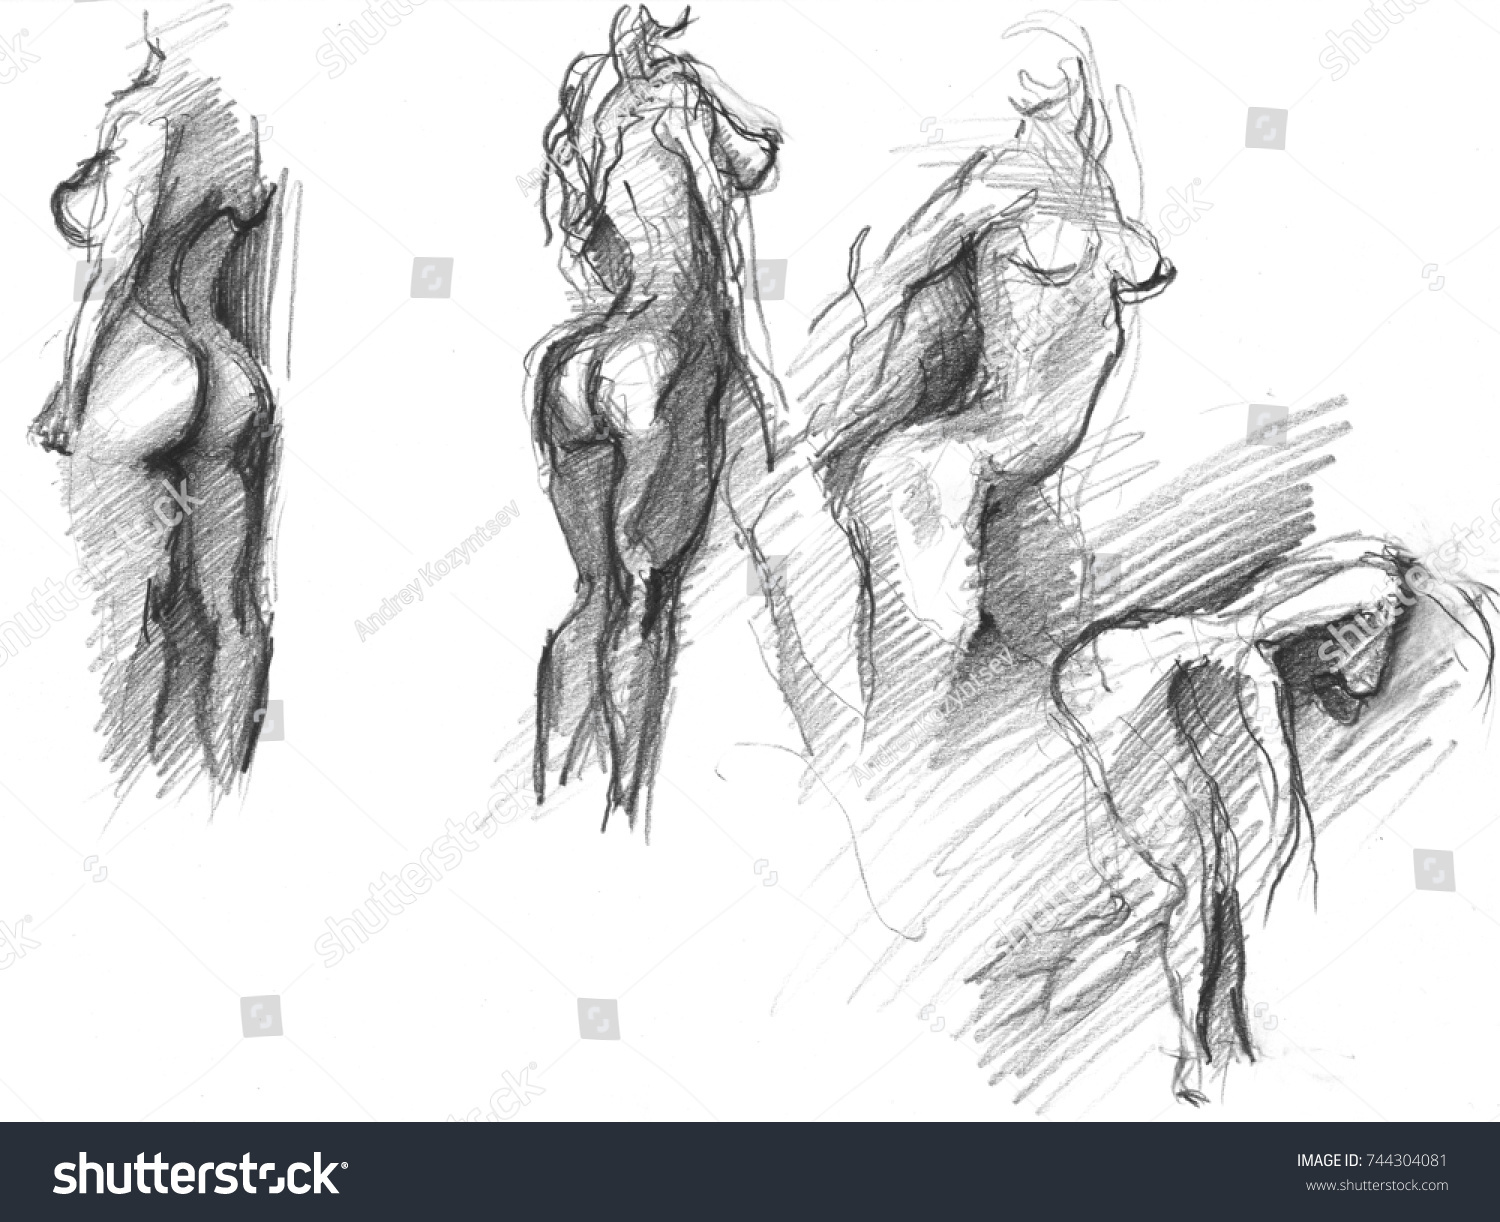 Naked lady sketch